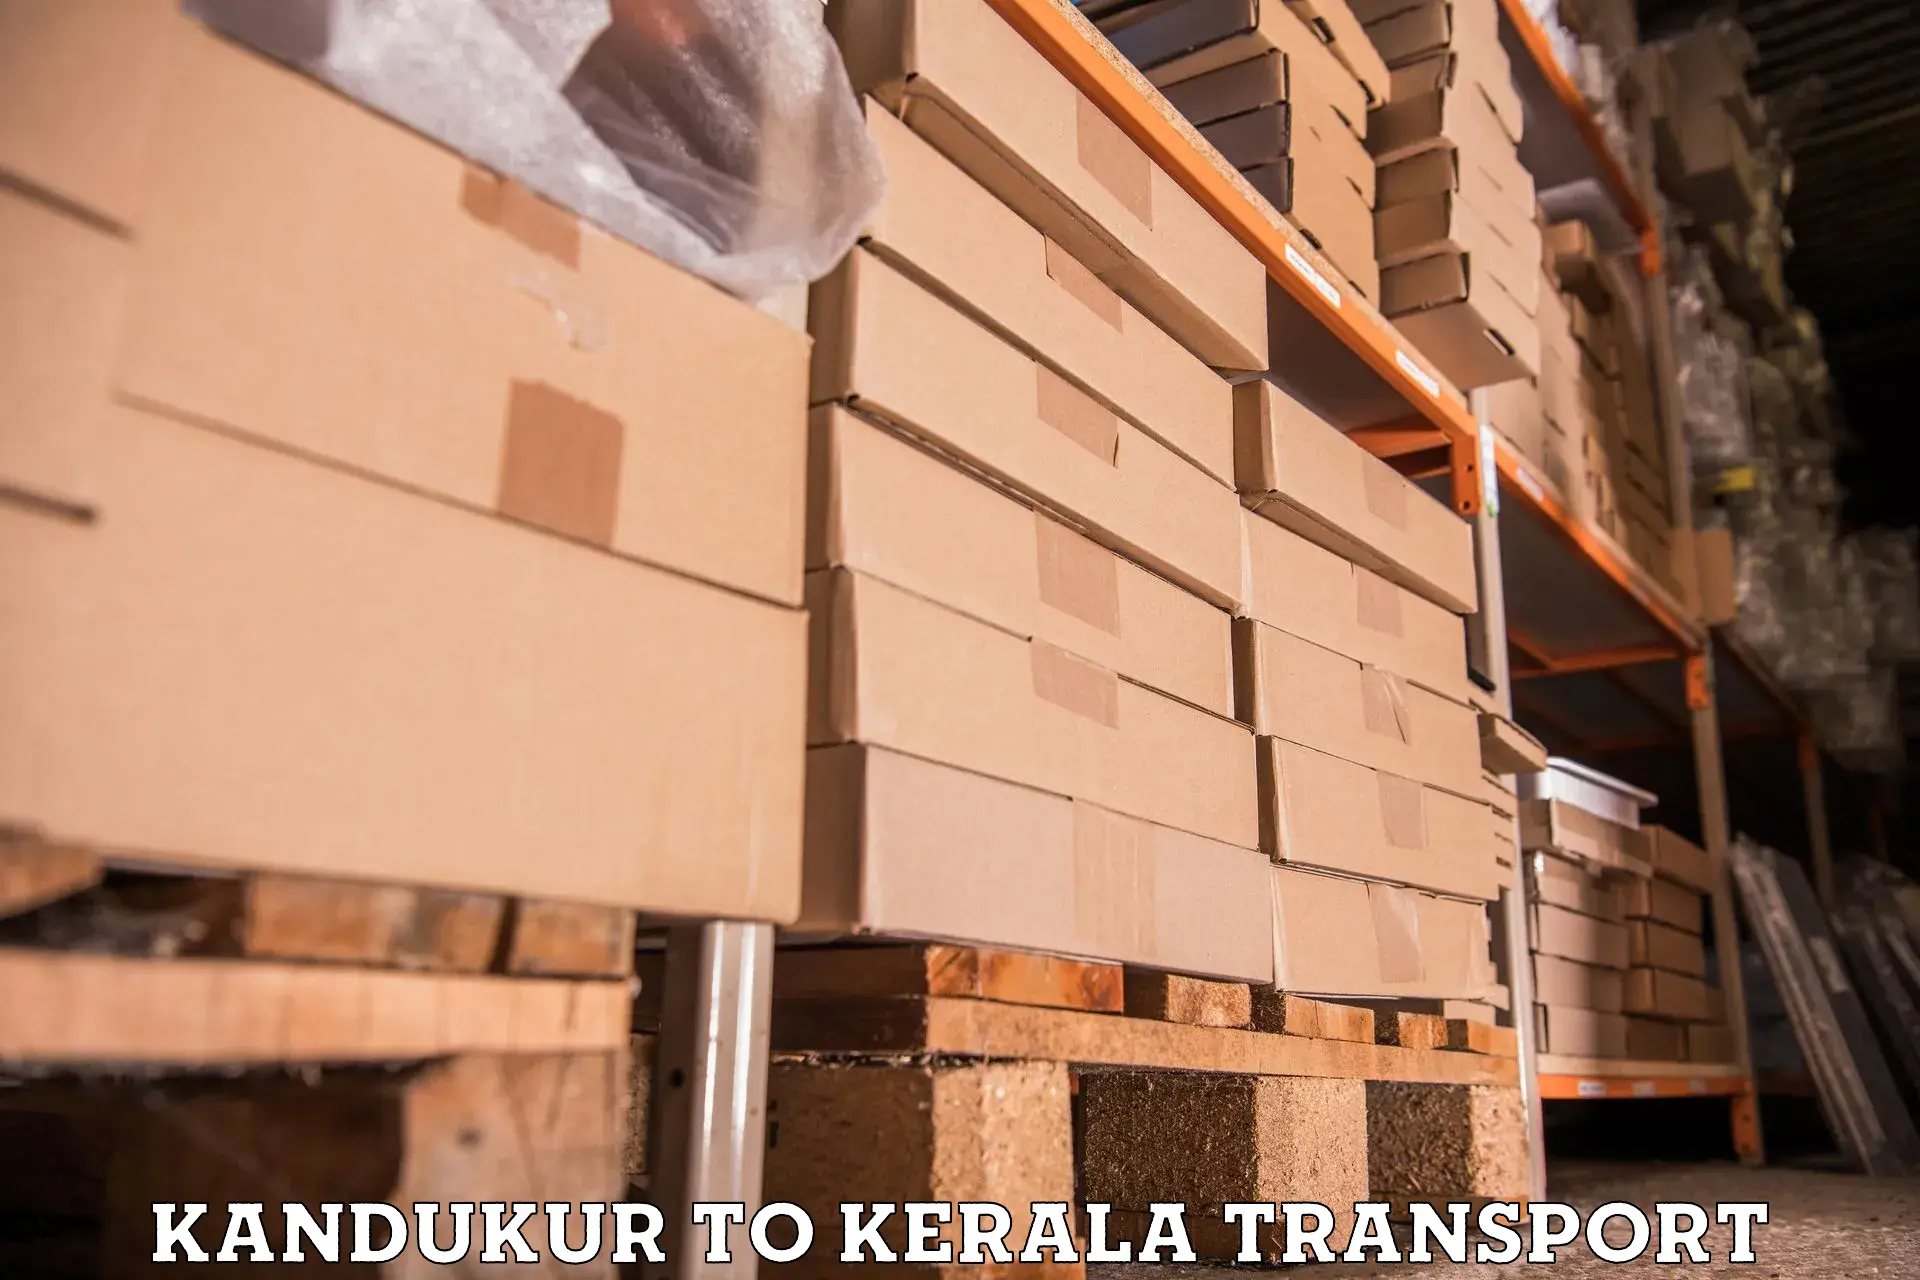 Furniture transport service Kandukur to Perambra